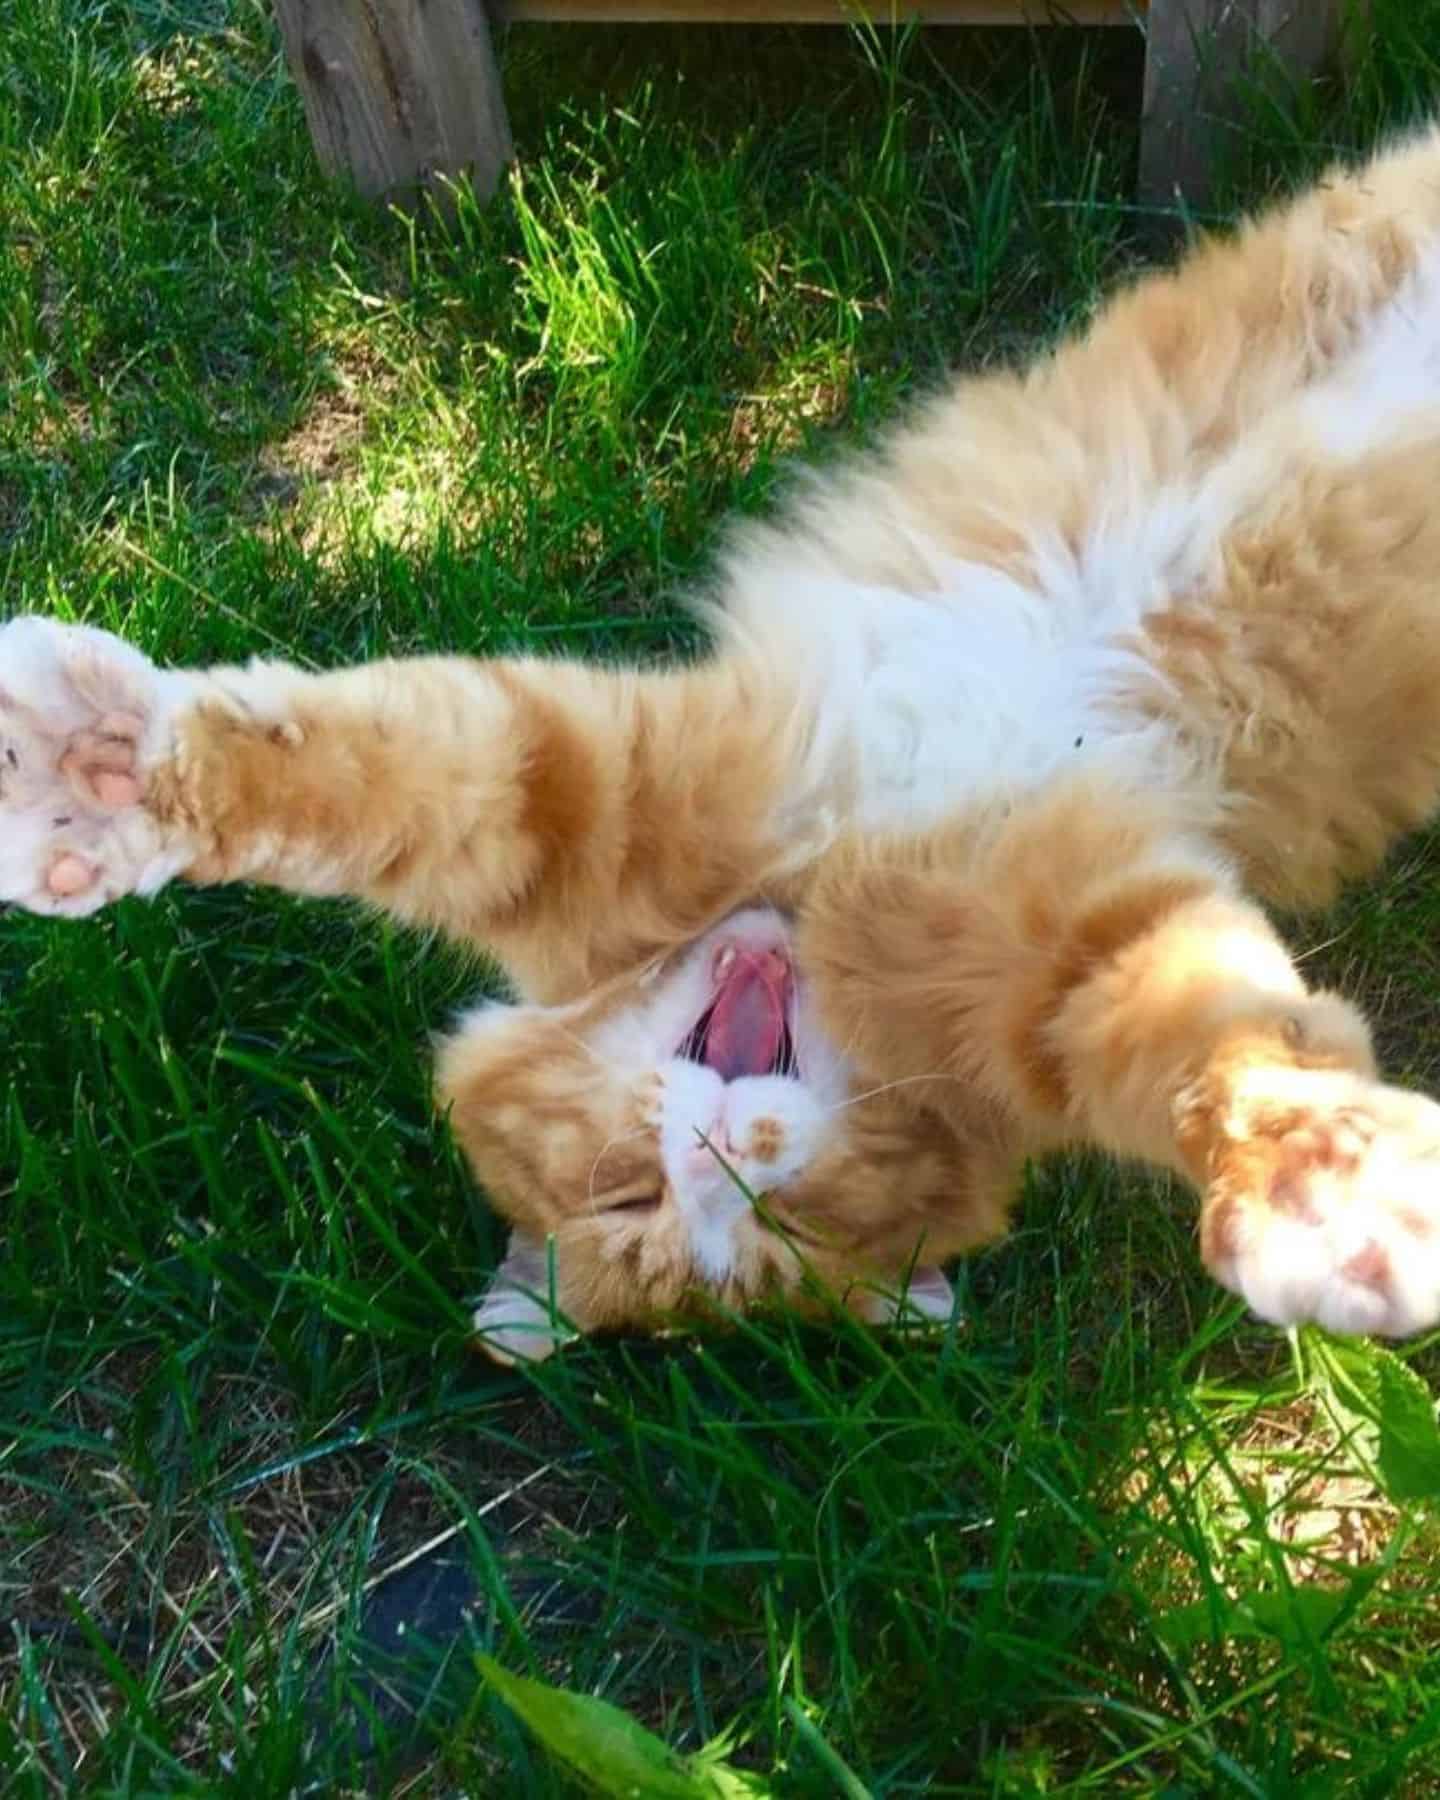 a playful cat lies on the grass